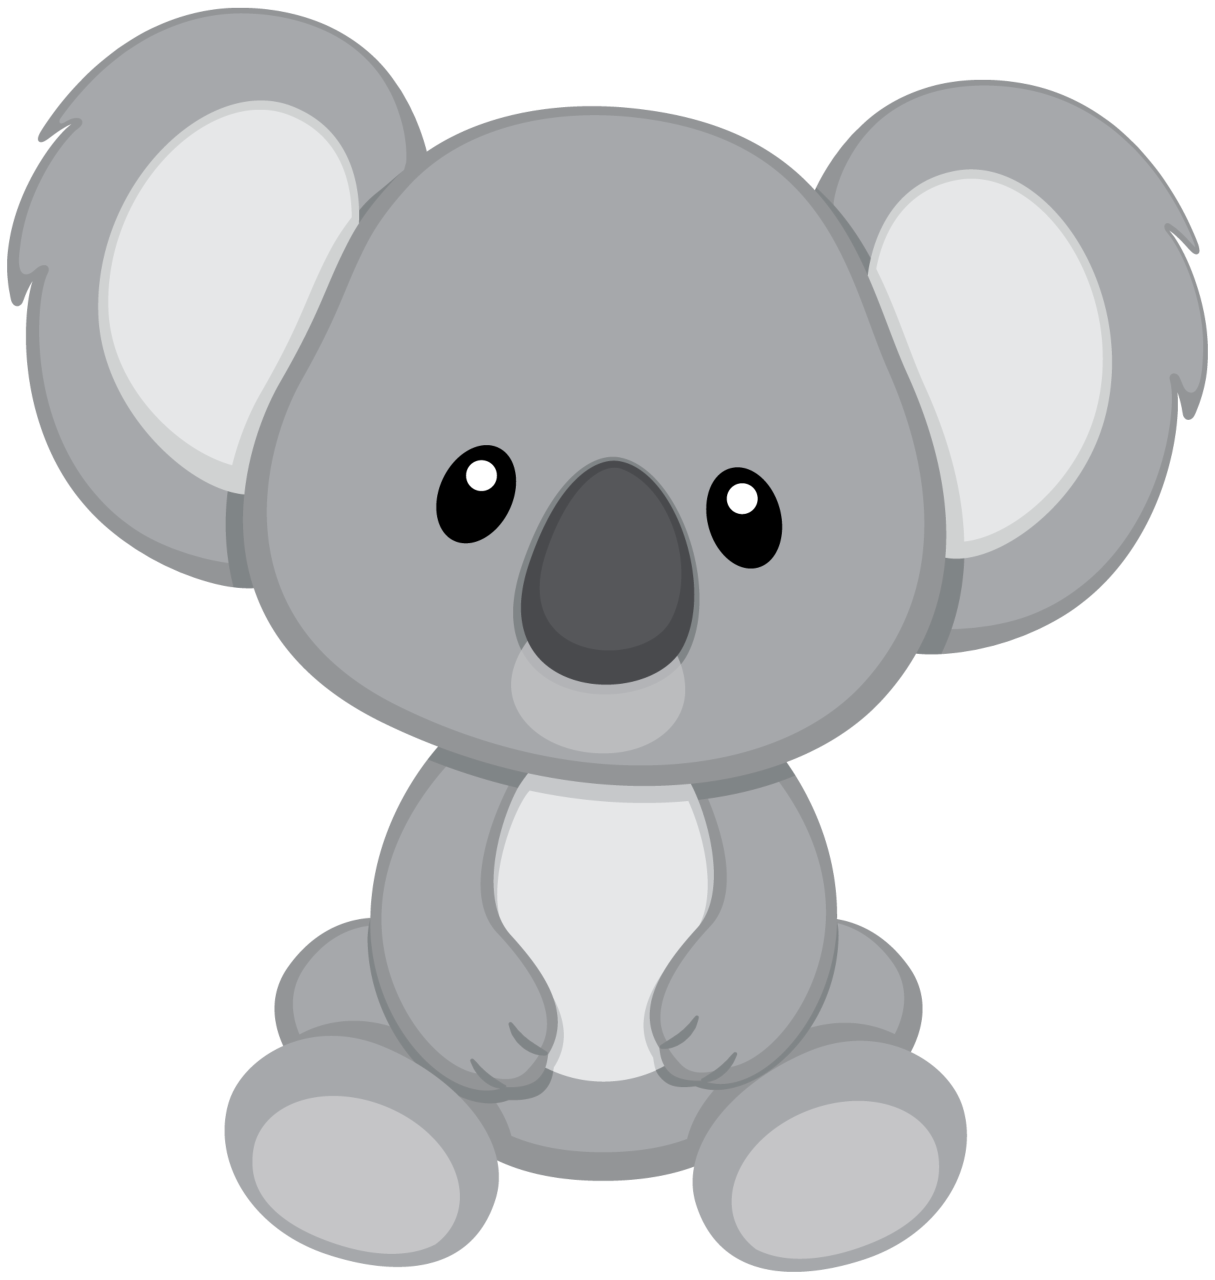 Baby Koala Stickers. Previous